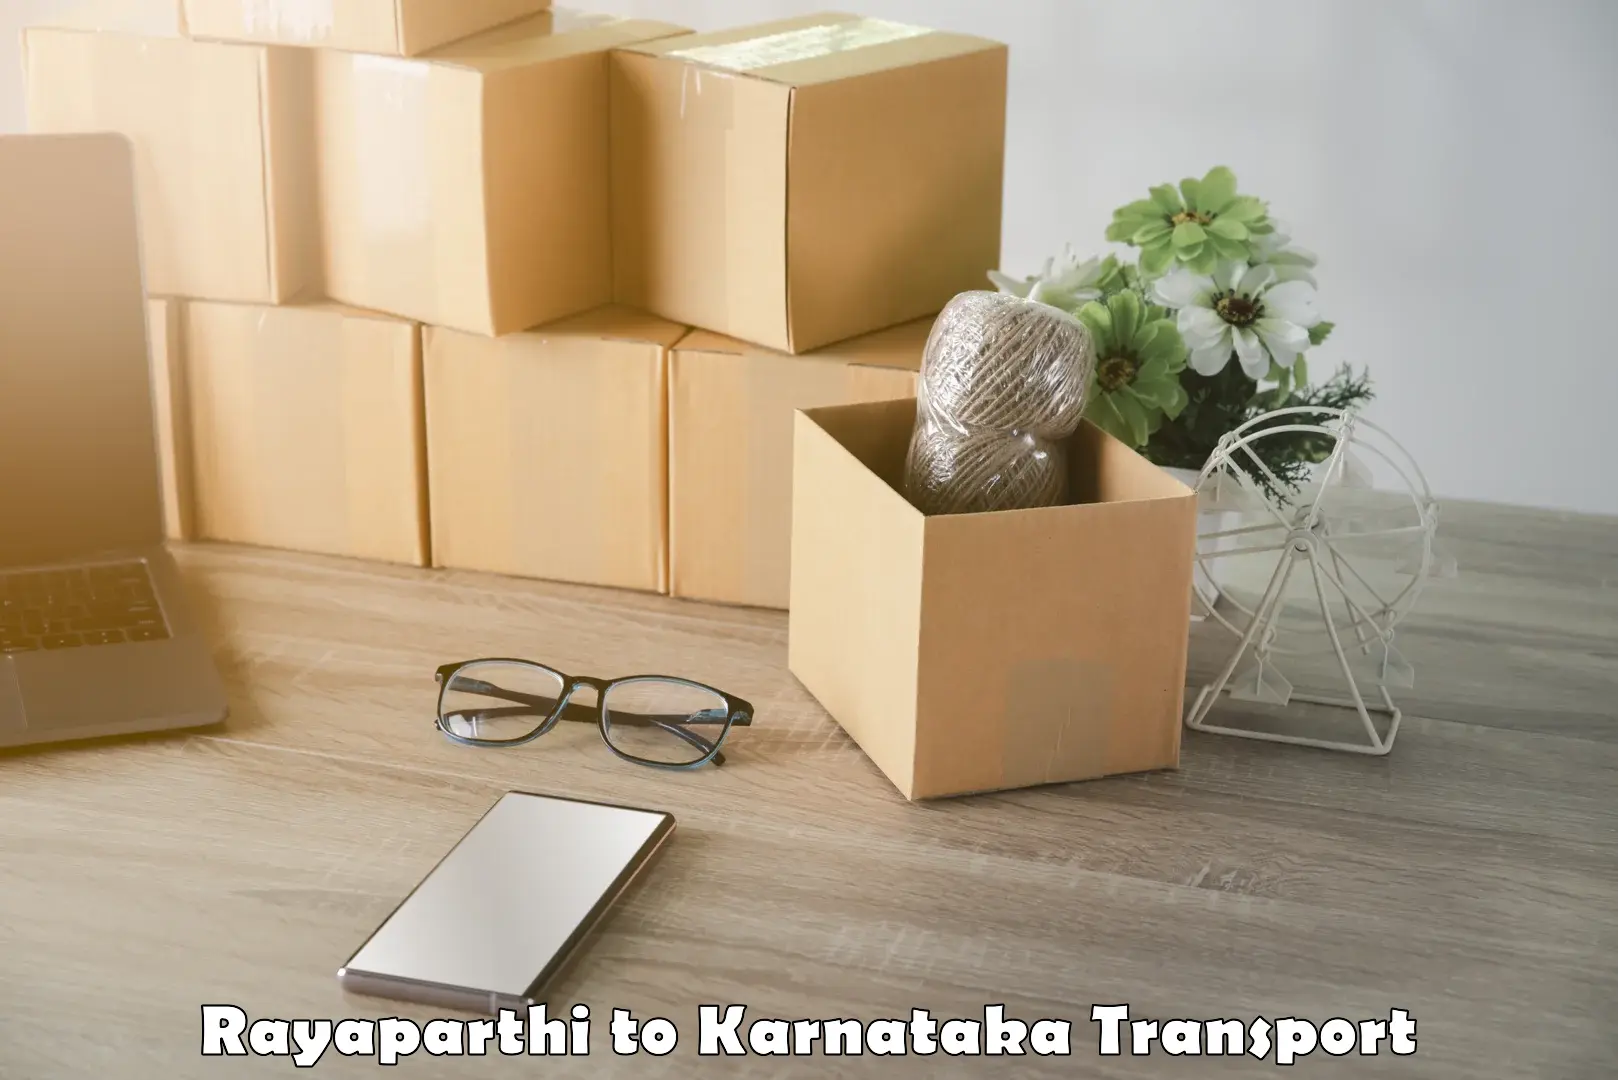 Daily transport service Rayaparthi to Kanakapura